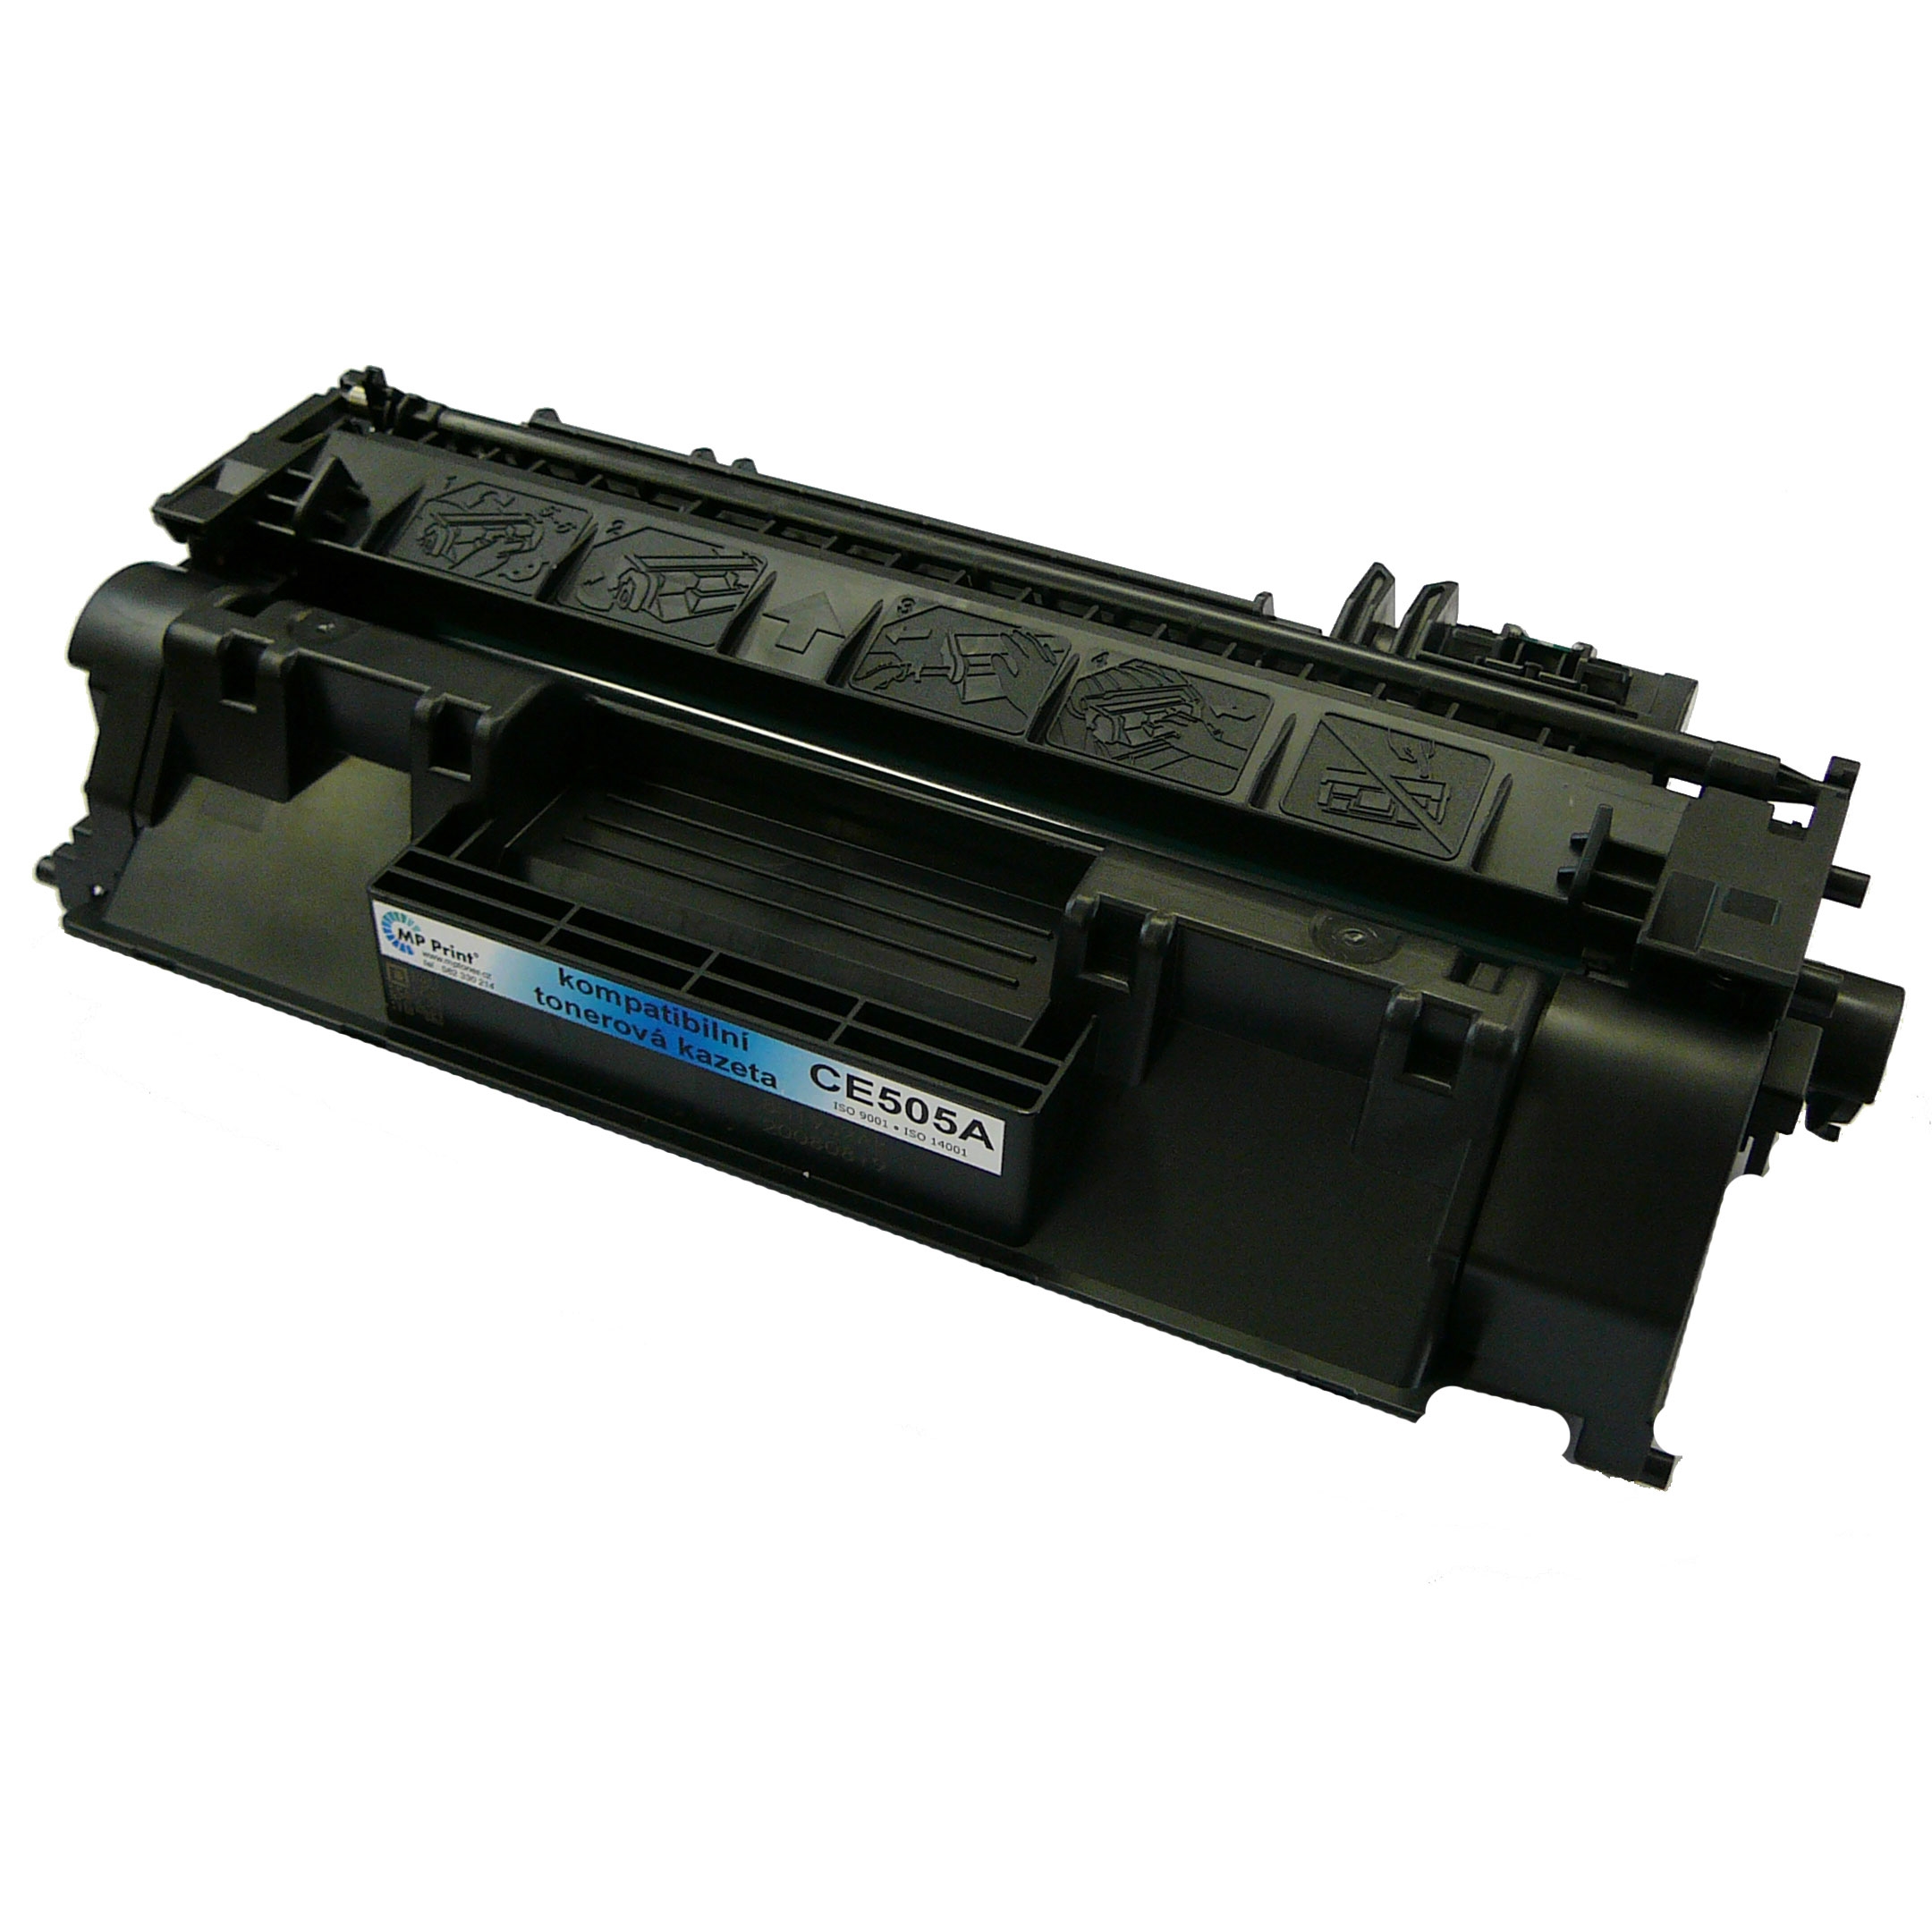 Kompatibilní toner HP CE505X, LaserJet P2055, black, 05X, MP Full print